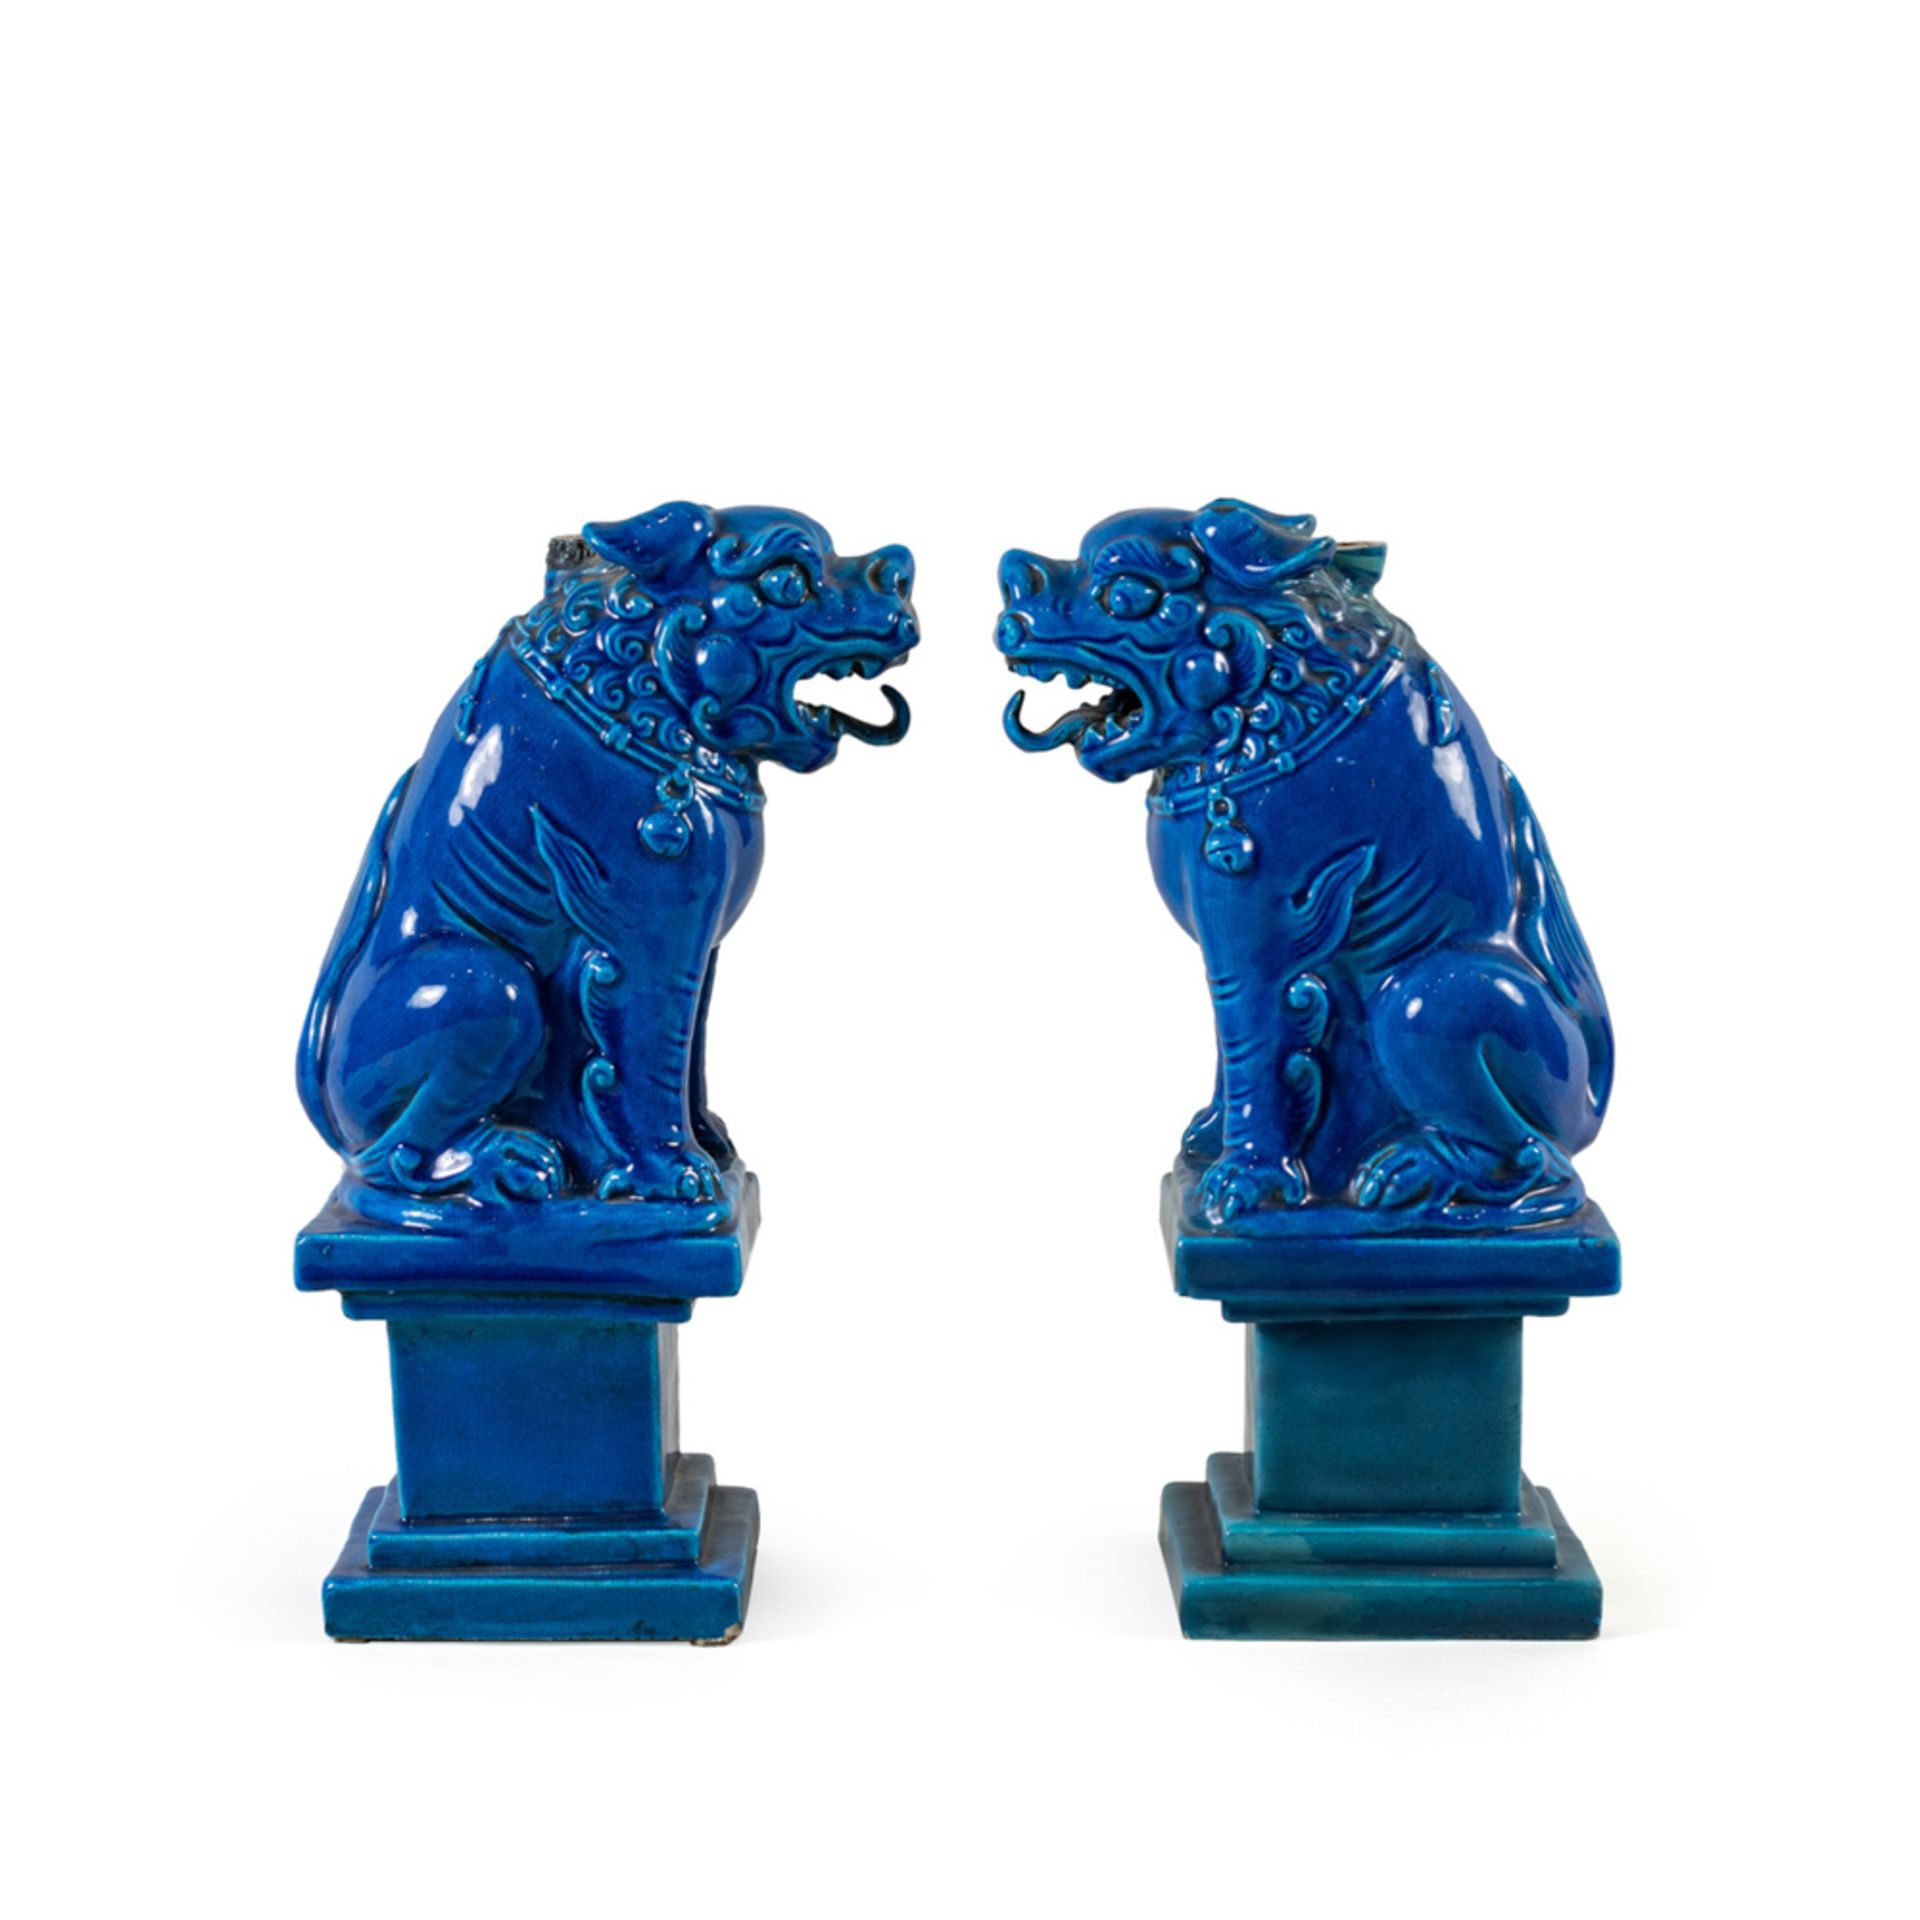 Pair of Pho dogs in glazed ceramic